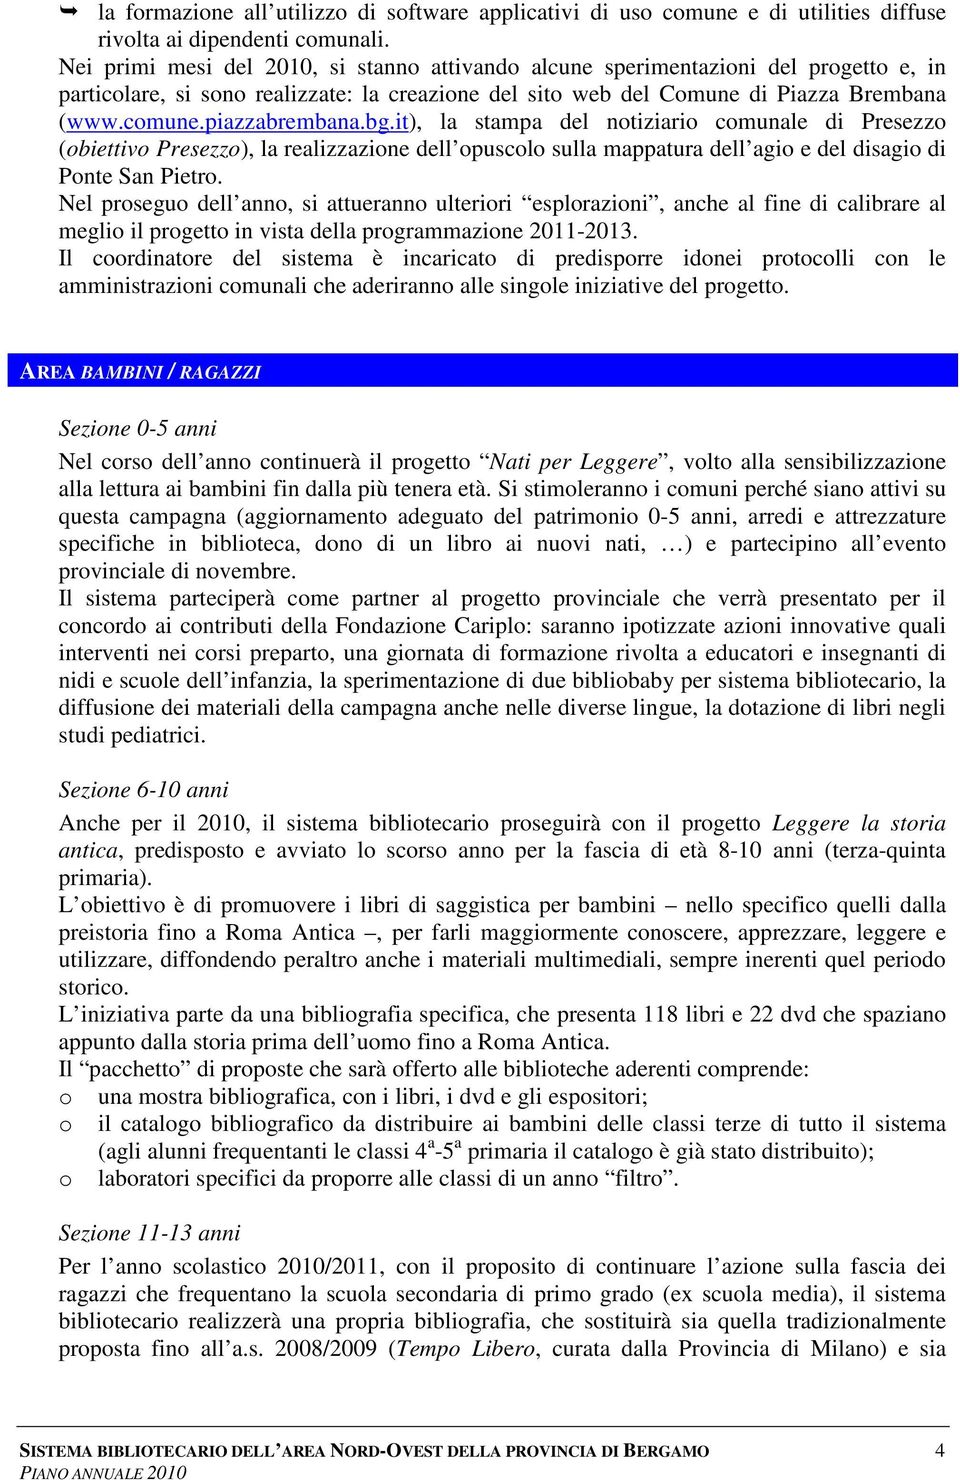 piazzabrembana.bg.it), la stampa del notiziario comunale di Presezzo (obiettivo Presezzo), la realizzazione dell opuscolo sulla mappatura dell agio e del disagio di Ponte San Pietro.